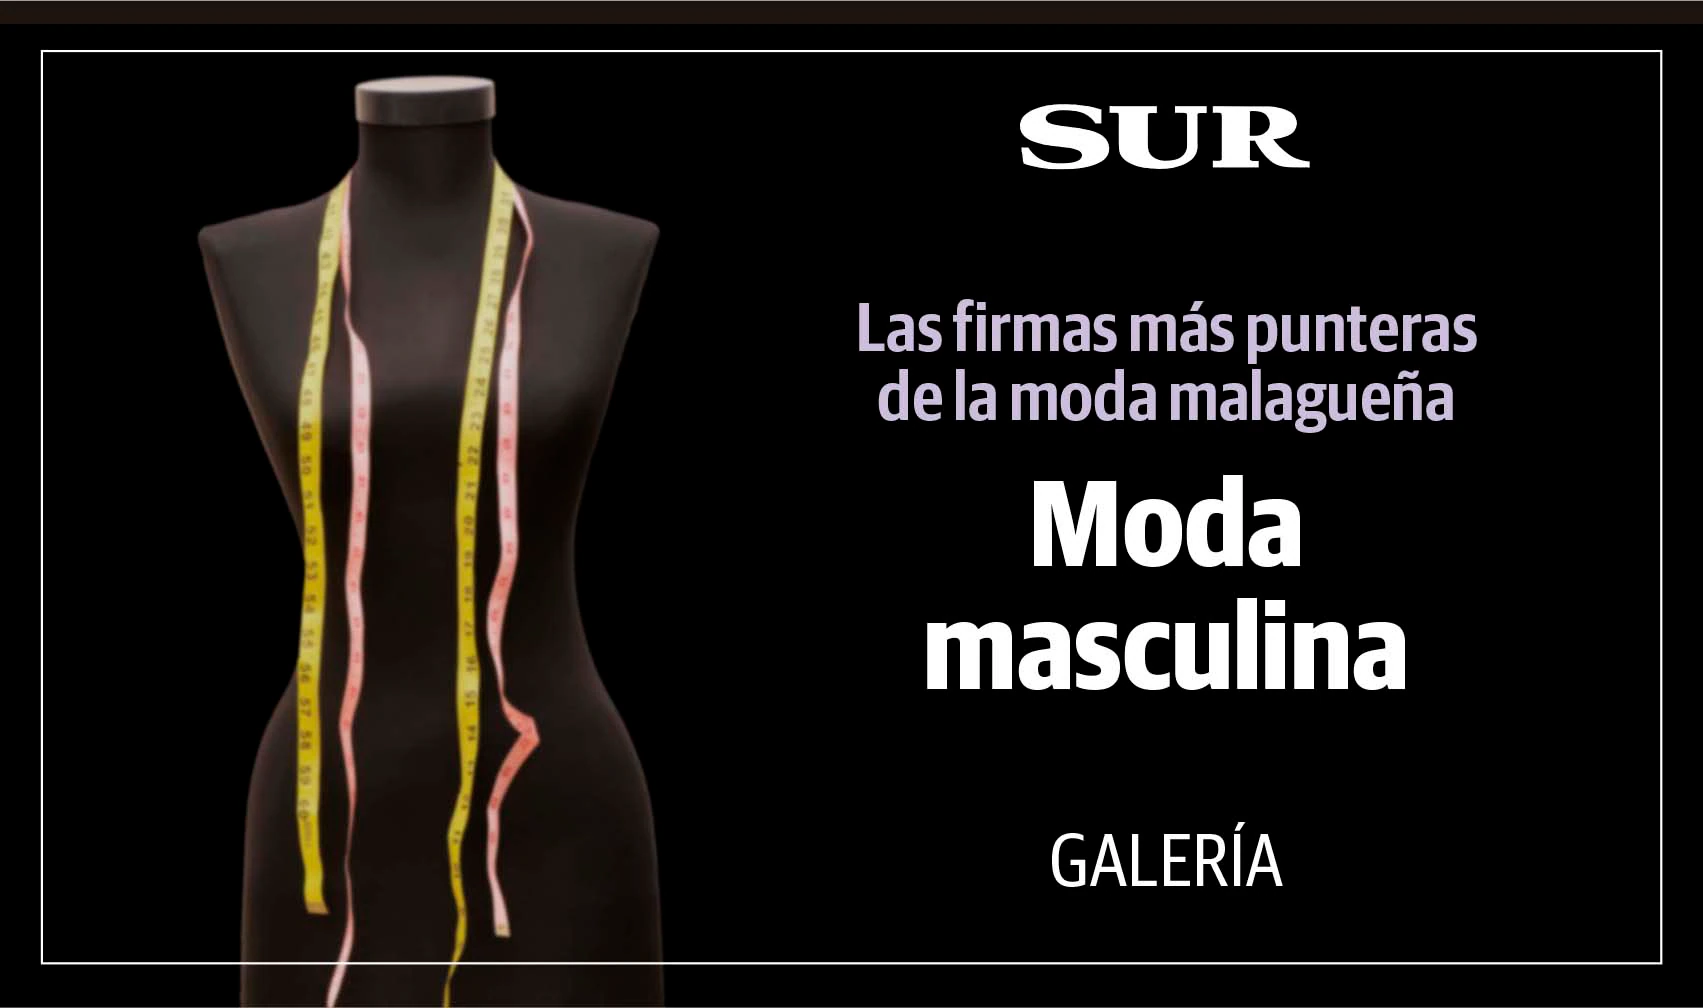 Fotos: La moda malagueña saca músculo: un repaso en imágenes por las marcas más punteras